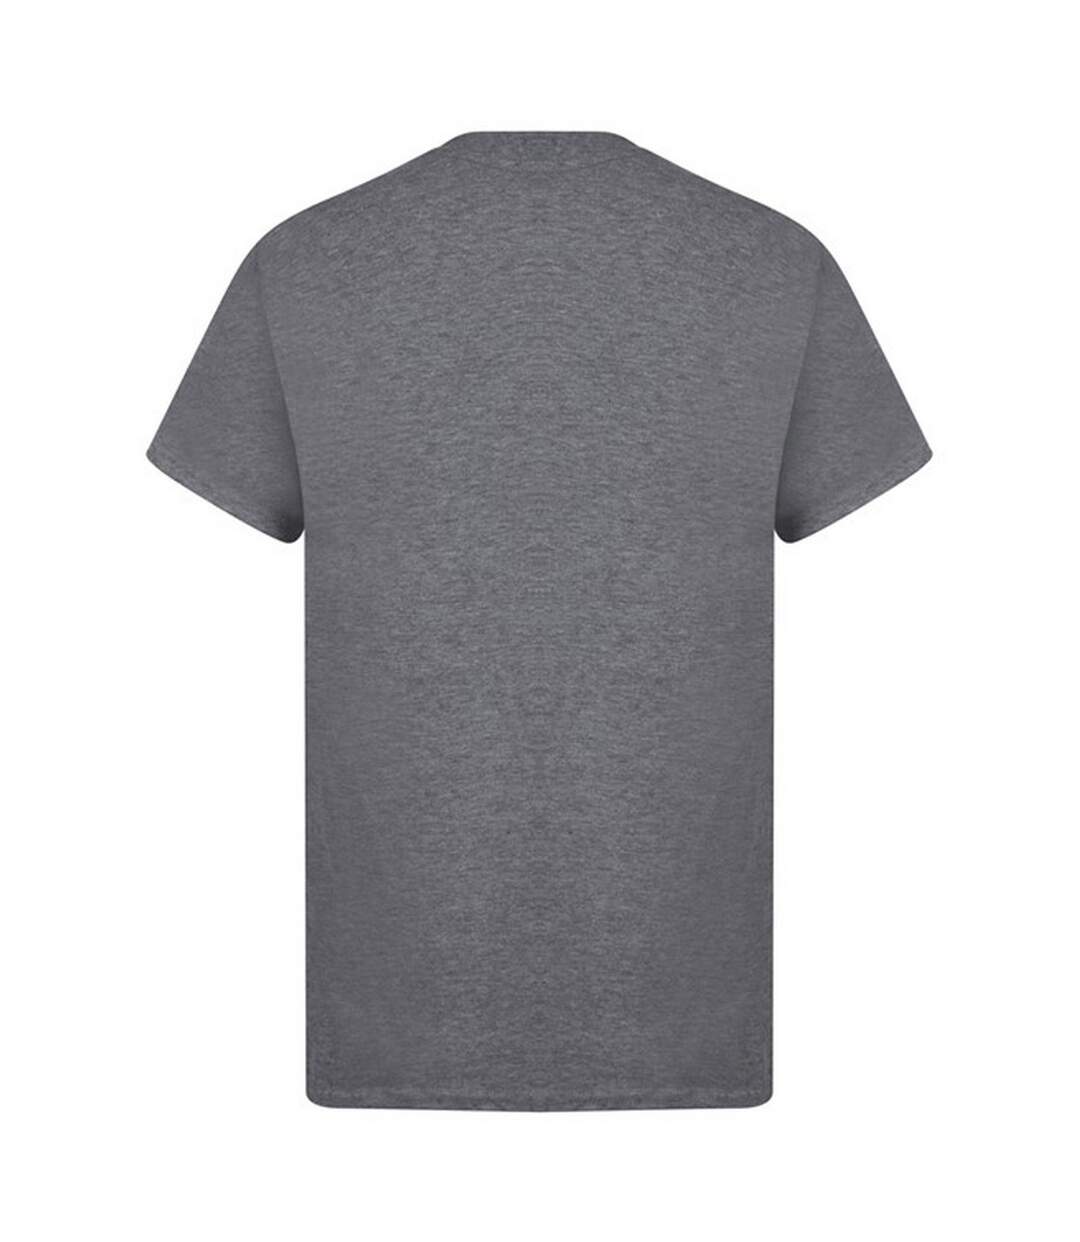 Casual - T-shirt manches courtes - Homme (Charbon de bois) - UTAB261